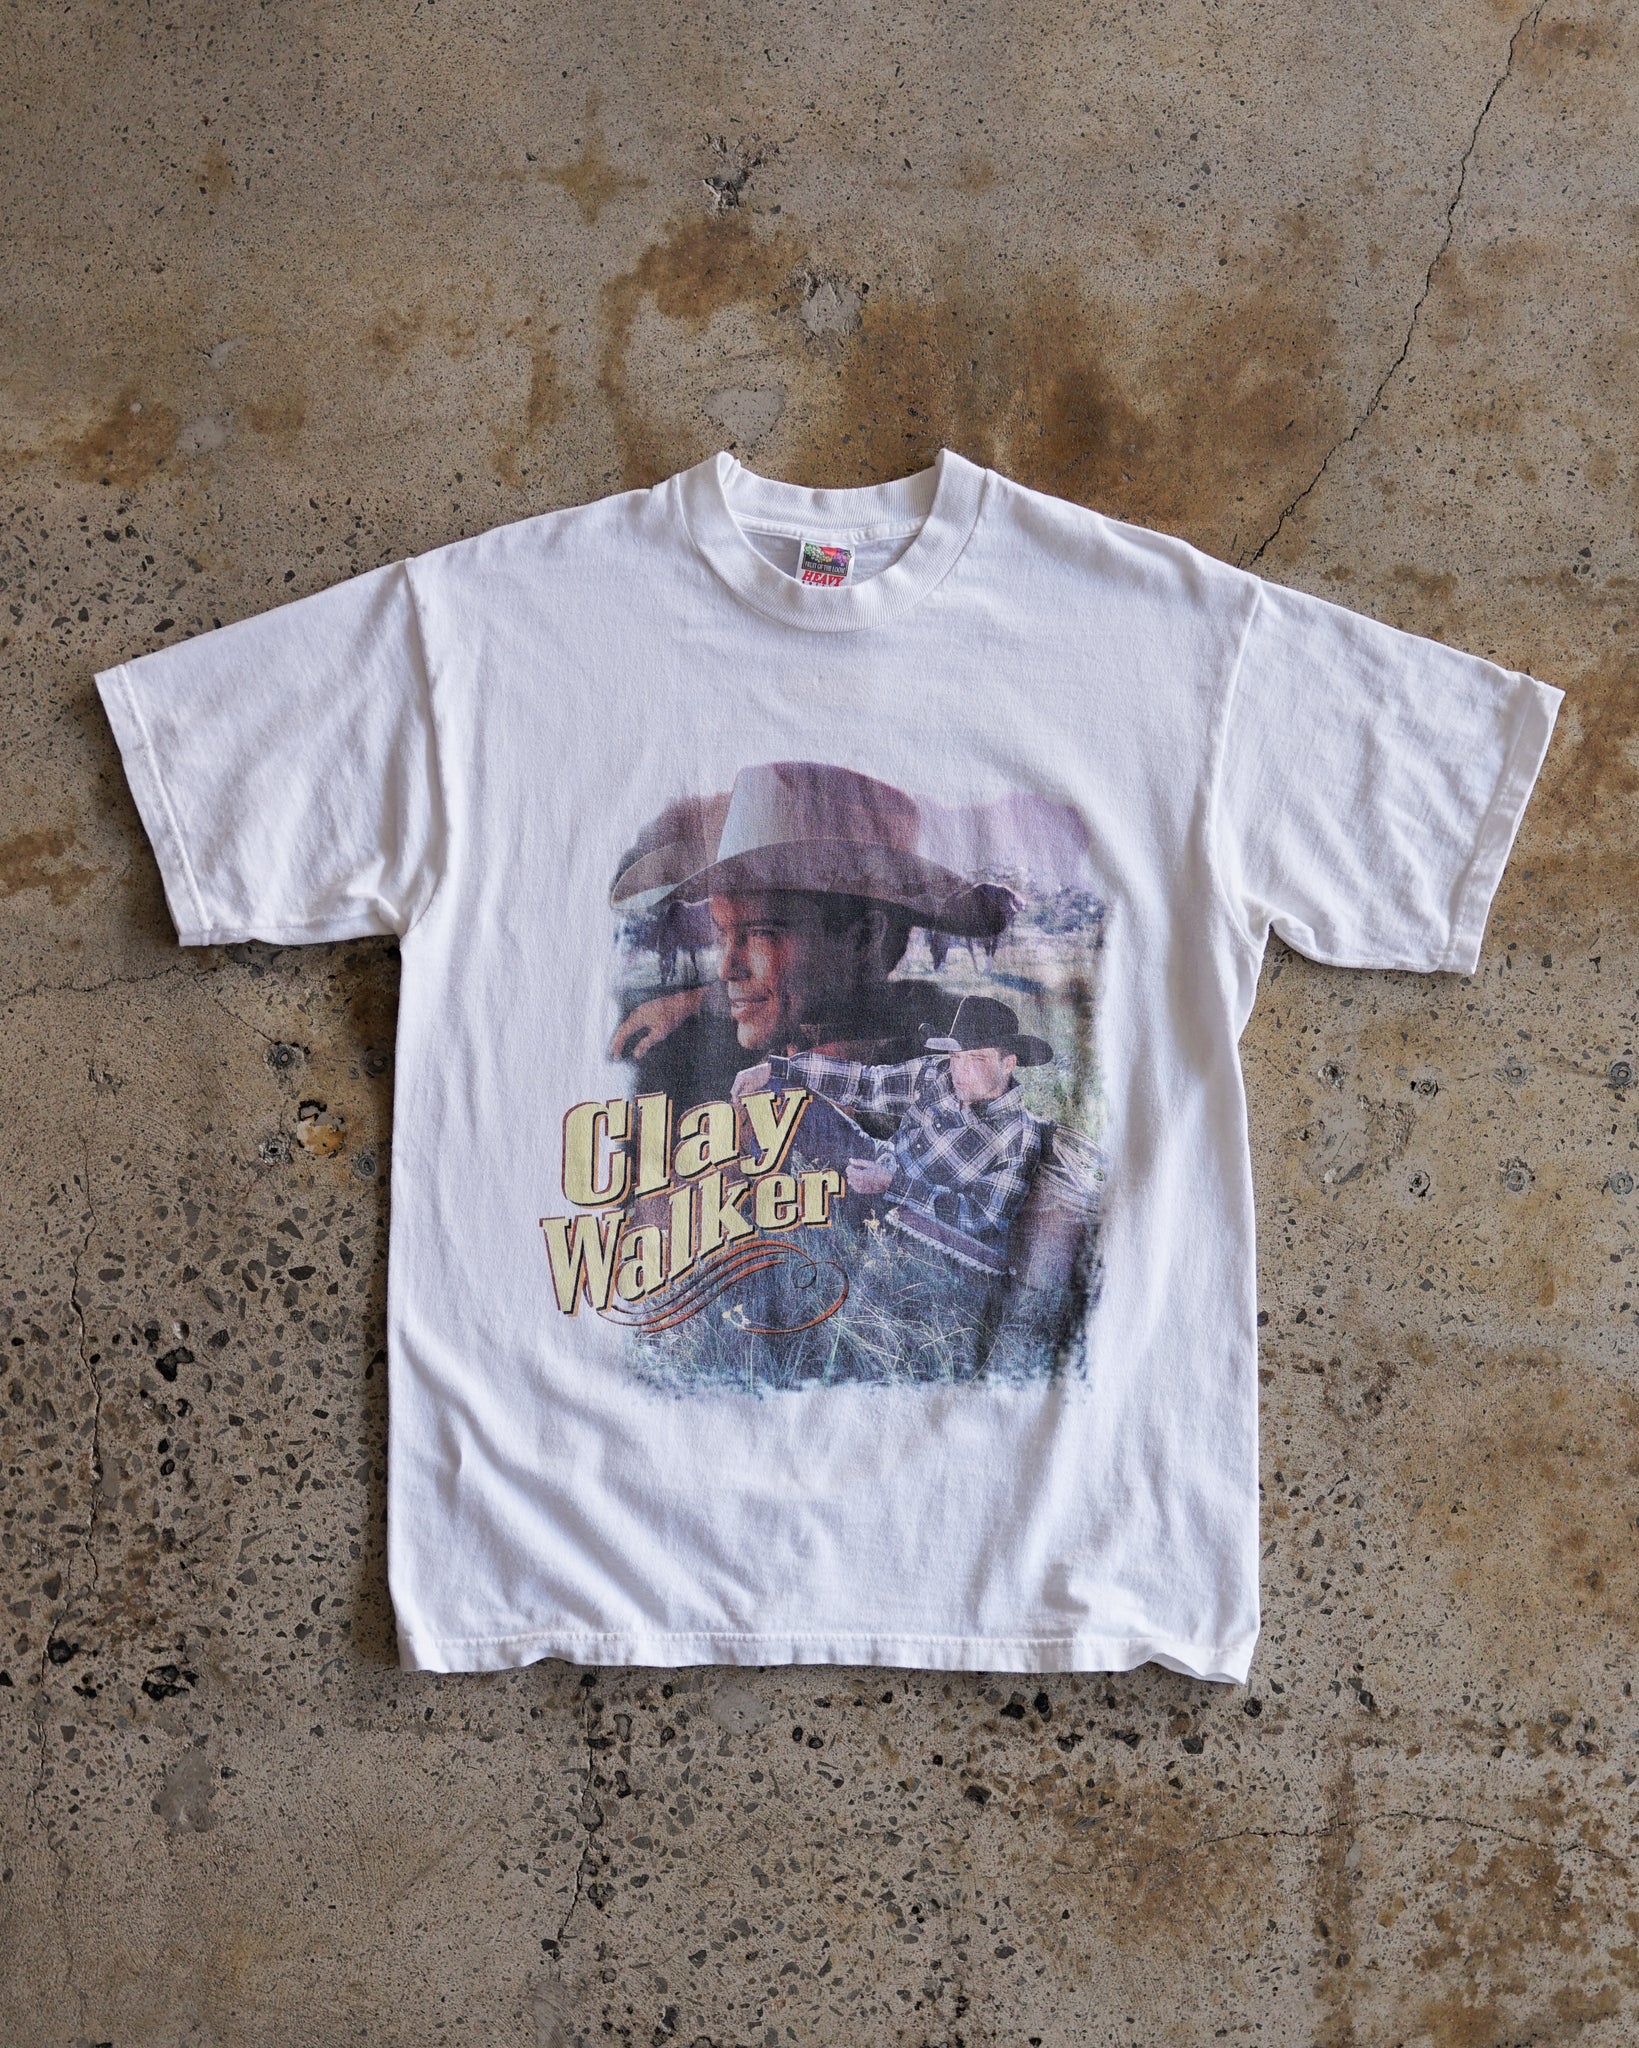 clay walker tour t-shirt